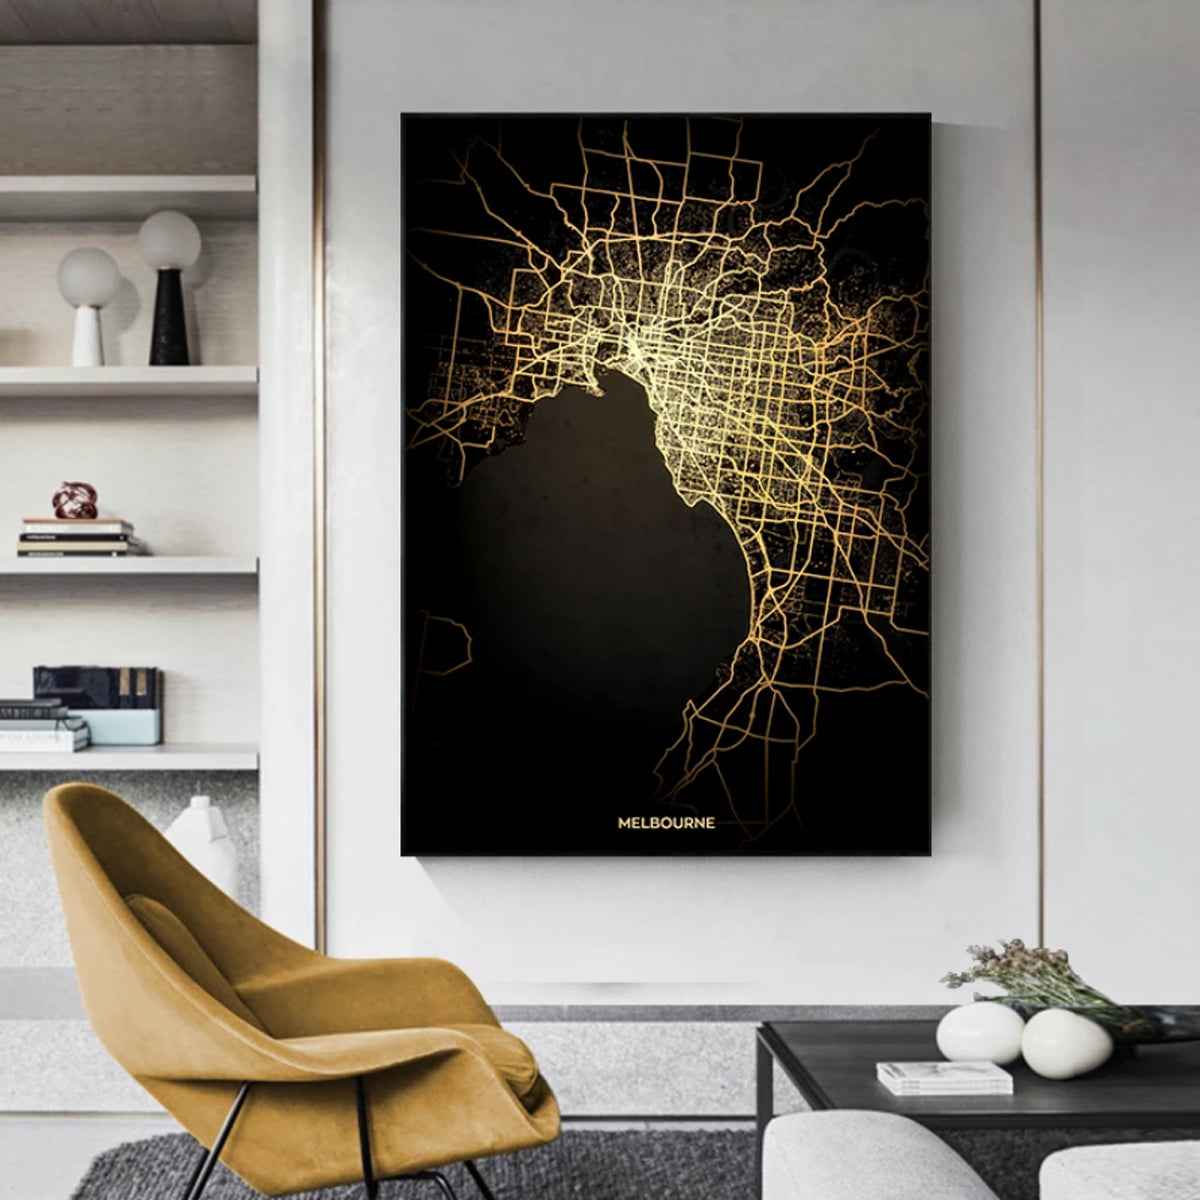 TPFLiving Luxus Poster Leinwand - Die Welt bei Nacht - Beleuchtete Stadtpläne berühmter Metropolen - 14 verschiedene Größen - OHNE Rahmen - Modell L: Wien